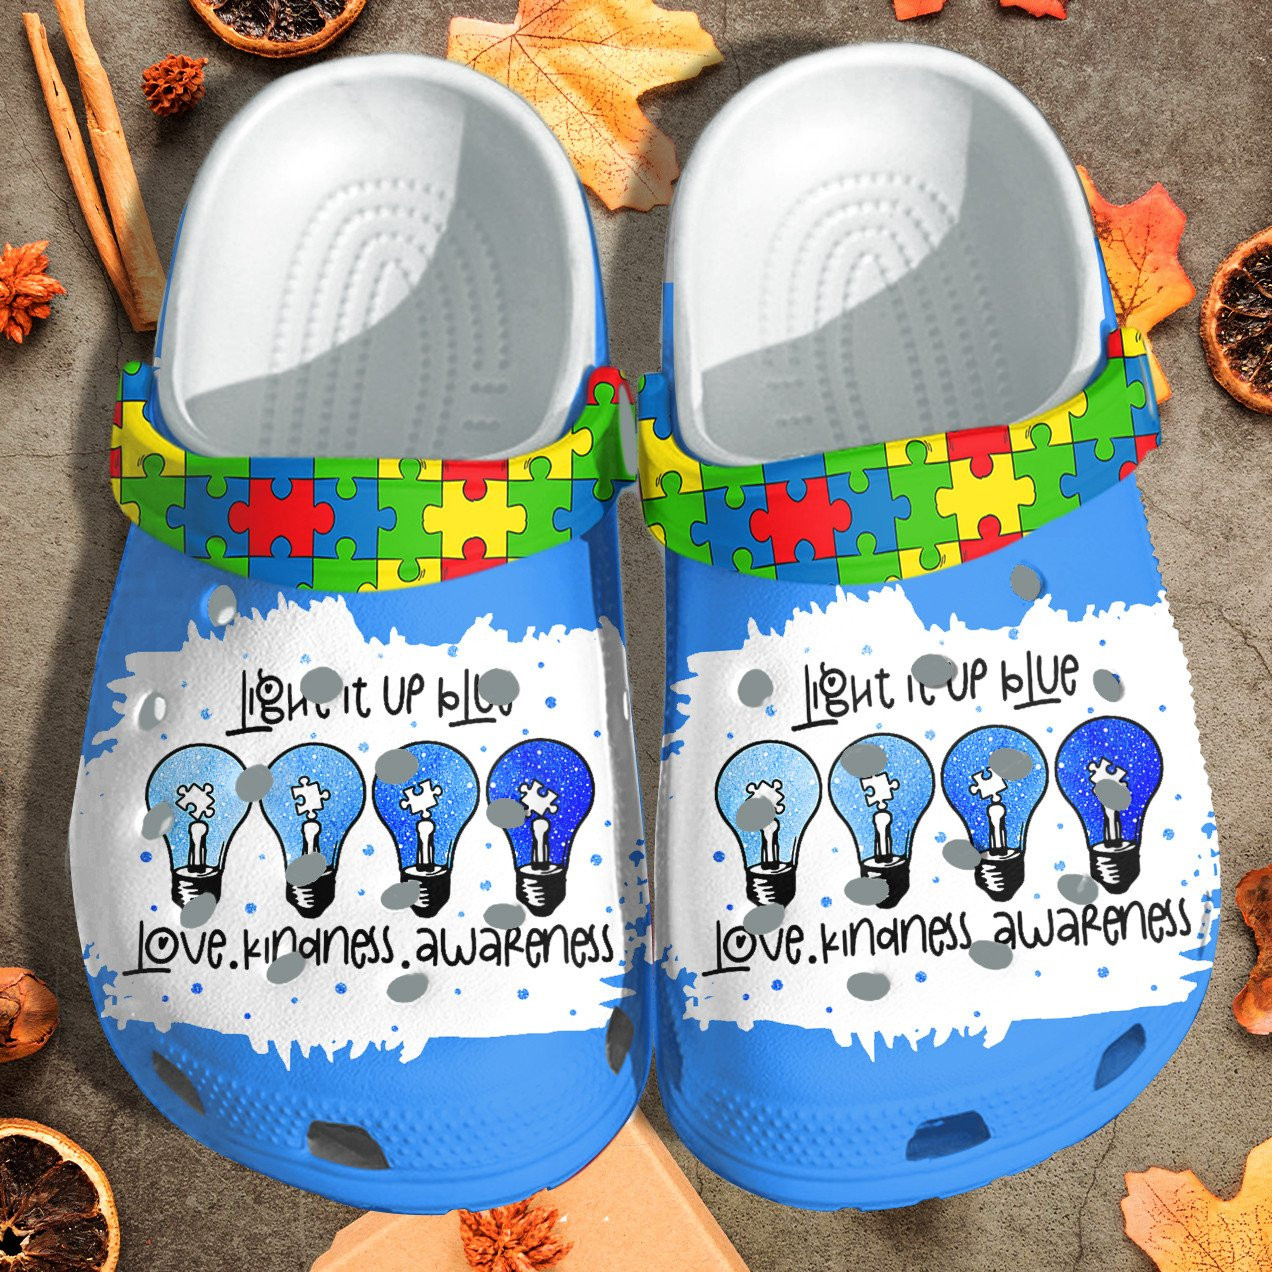 Light It Up Blue Puzzel April Autism Crocs Shoes - Love Kindnes Awareness Shoes Croc Clogs Gifts For Son Daughter